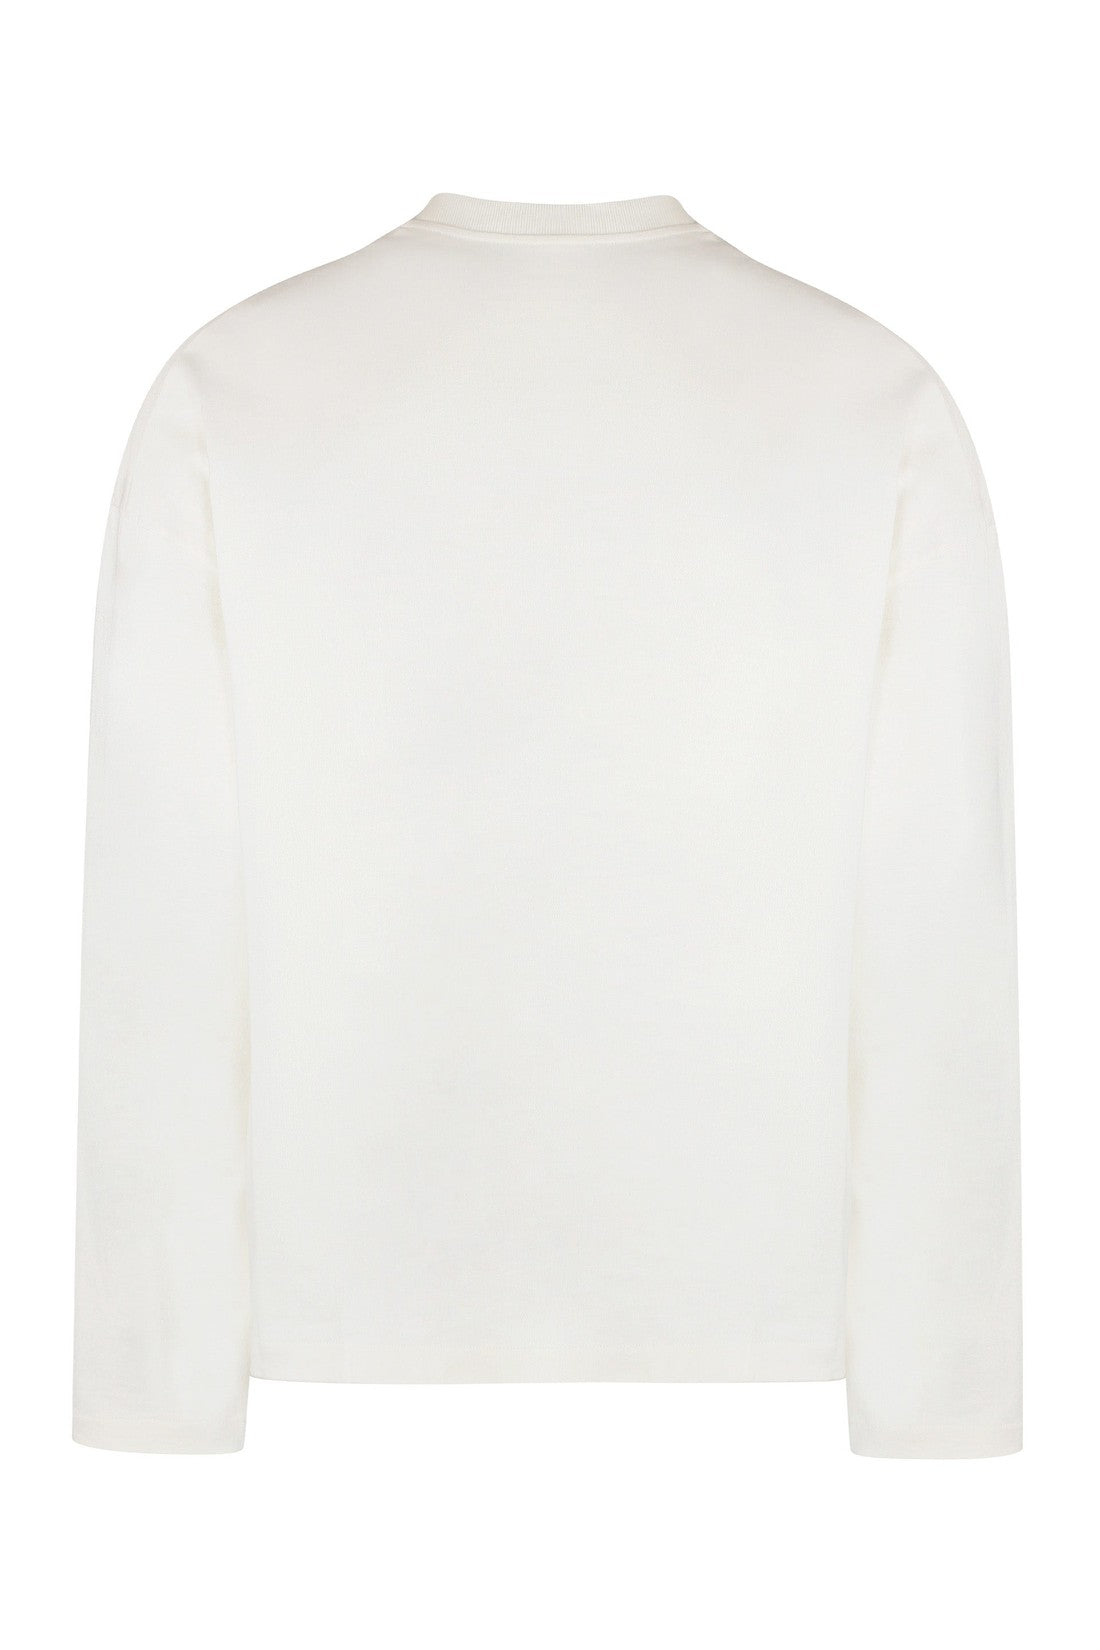 Jil Sander-OUTLET-SALE-long sleeve cotton t-shirt-ARCHIVIST